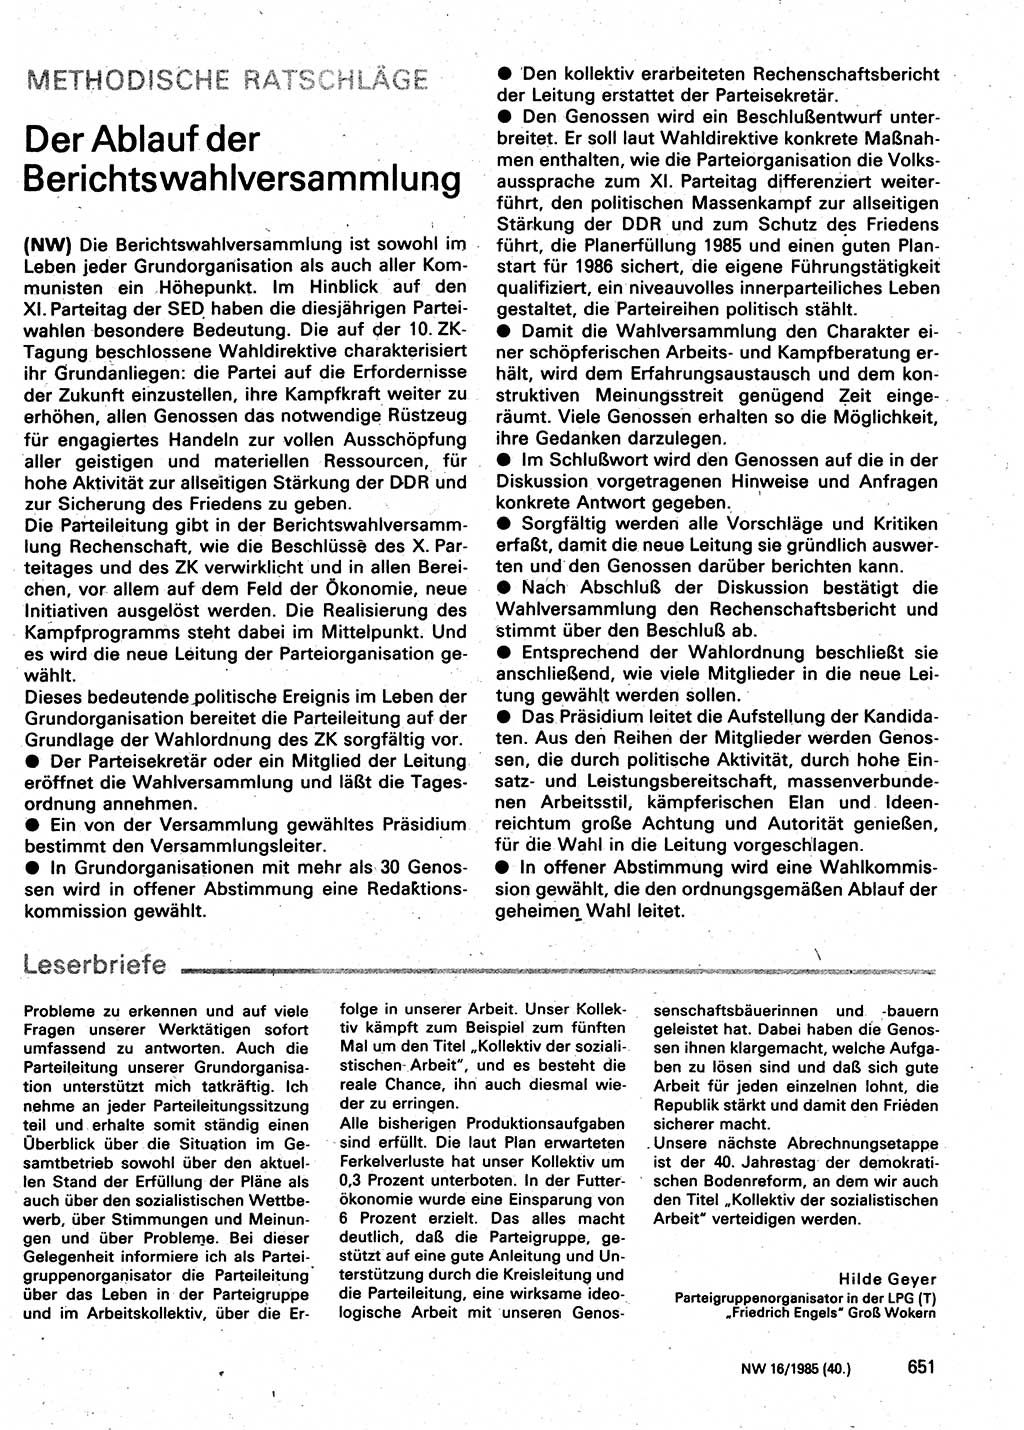 Neuer Weg (NW), Organ des Zentralkomitees (ZK) der SED (Sozialistische Einheitspartei Deutschlands) für Fragen des Parteilebens, 40. Jahrgang [Deutsche Demokratische Republik (DDR)] 1985, Seite 651 (NW ZK SED DDR 1985, S. 651)